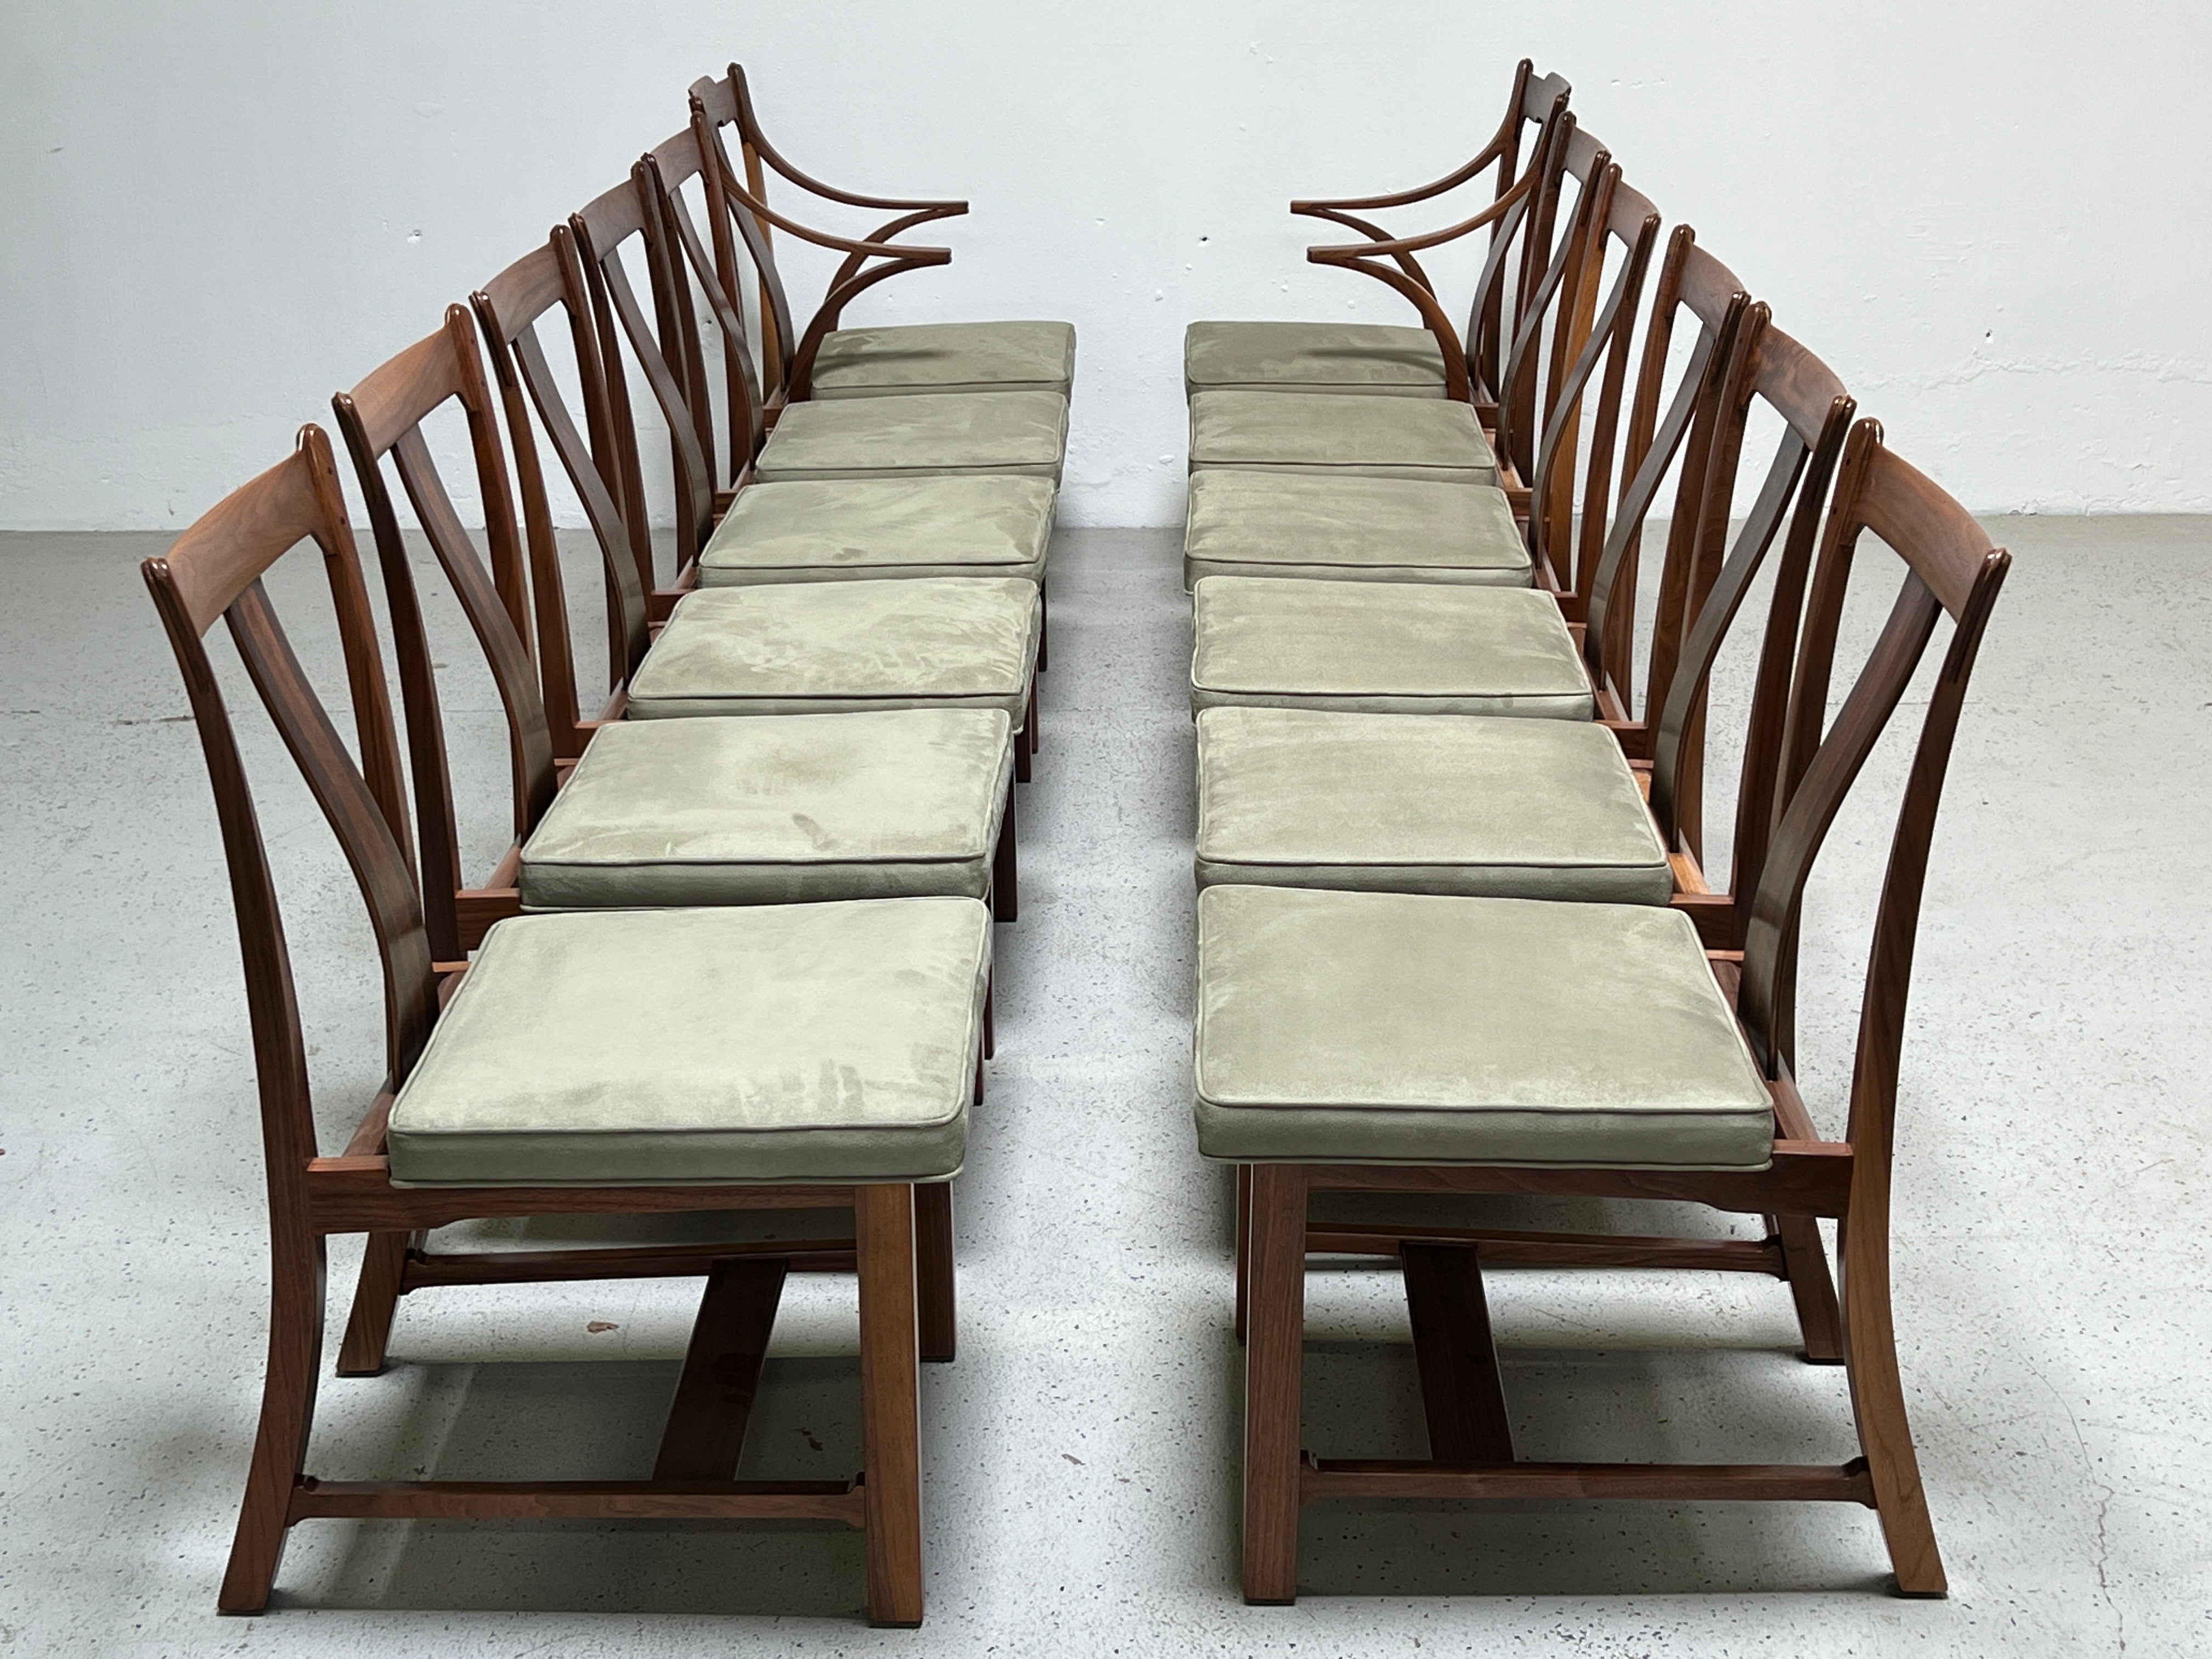 Un ensemble extrêmement rare de douze chaises de salle à manger conçues par Edward Wormley pour Dunbar. Connue sous le nom de chaise Greene & Greene pour son aspect artisanal avec sa crête à tenons apparents, son arceau central en bois de rose et sa